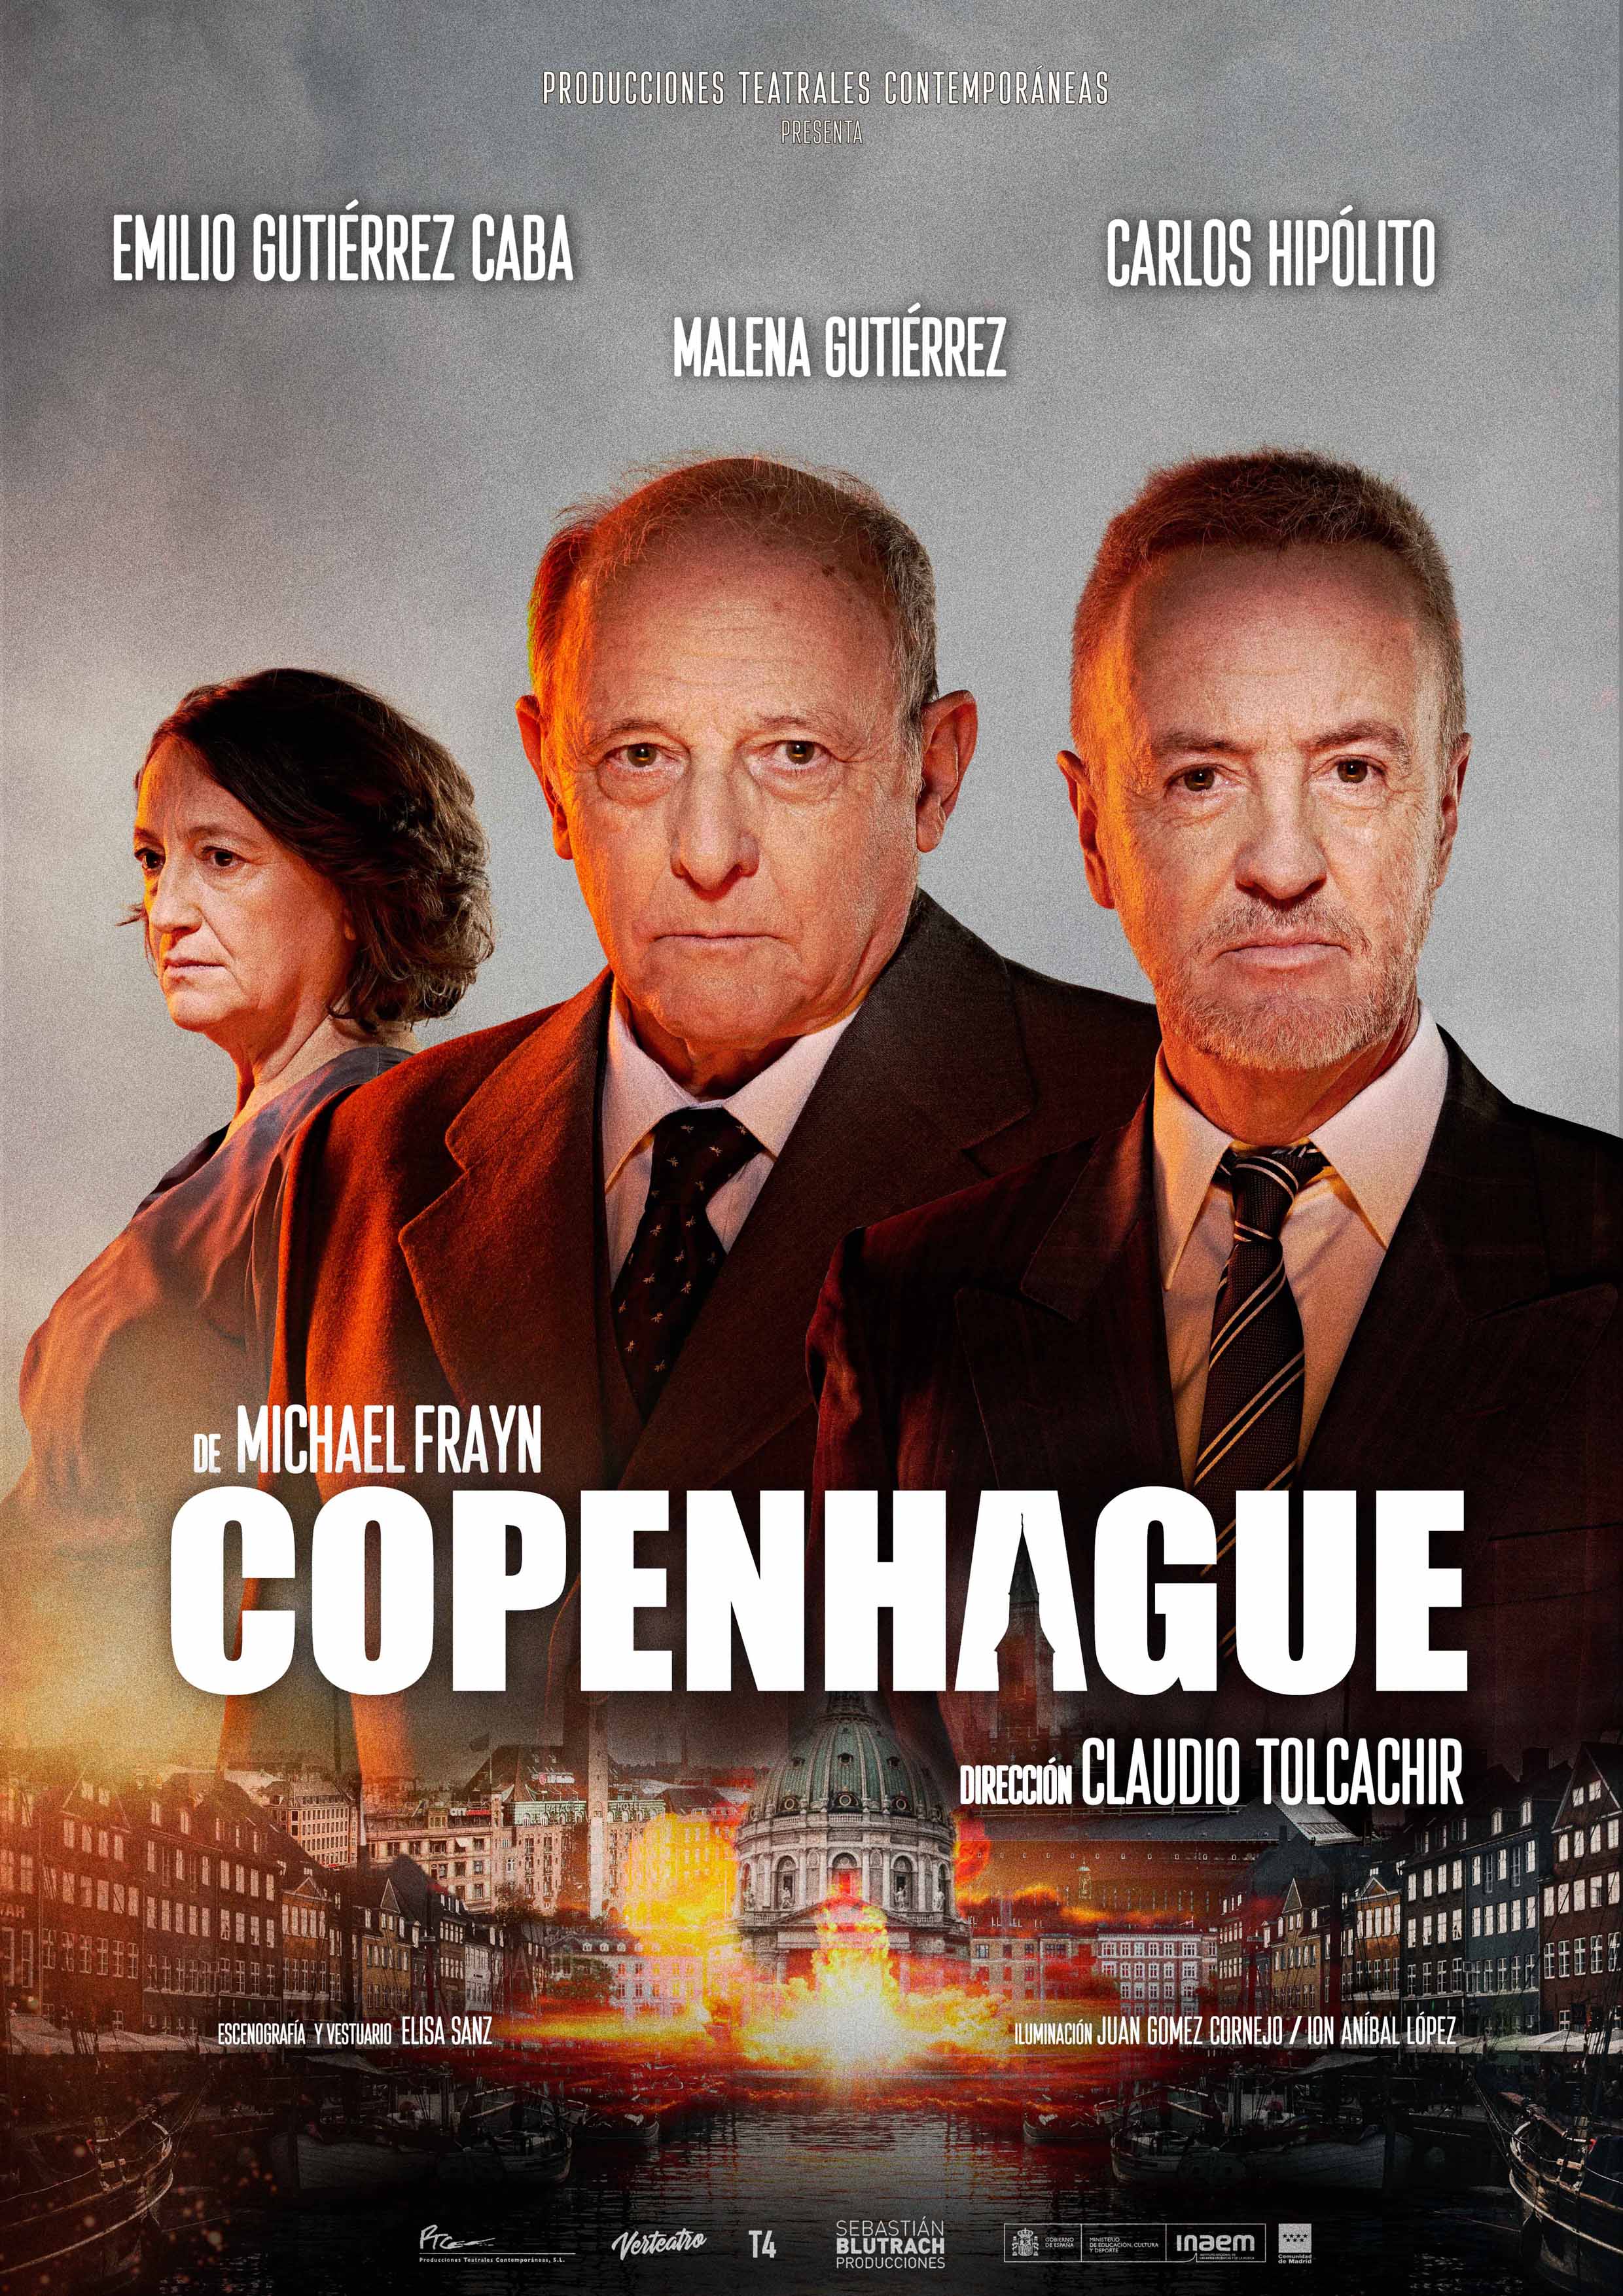 COPENHAGUE, dirigida por Claudio Tolcachir